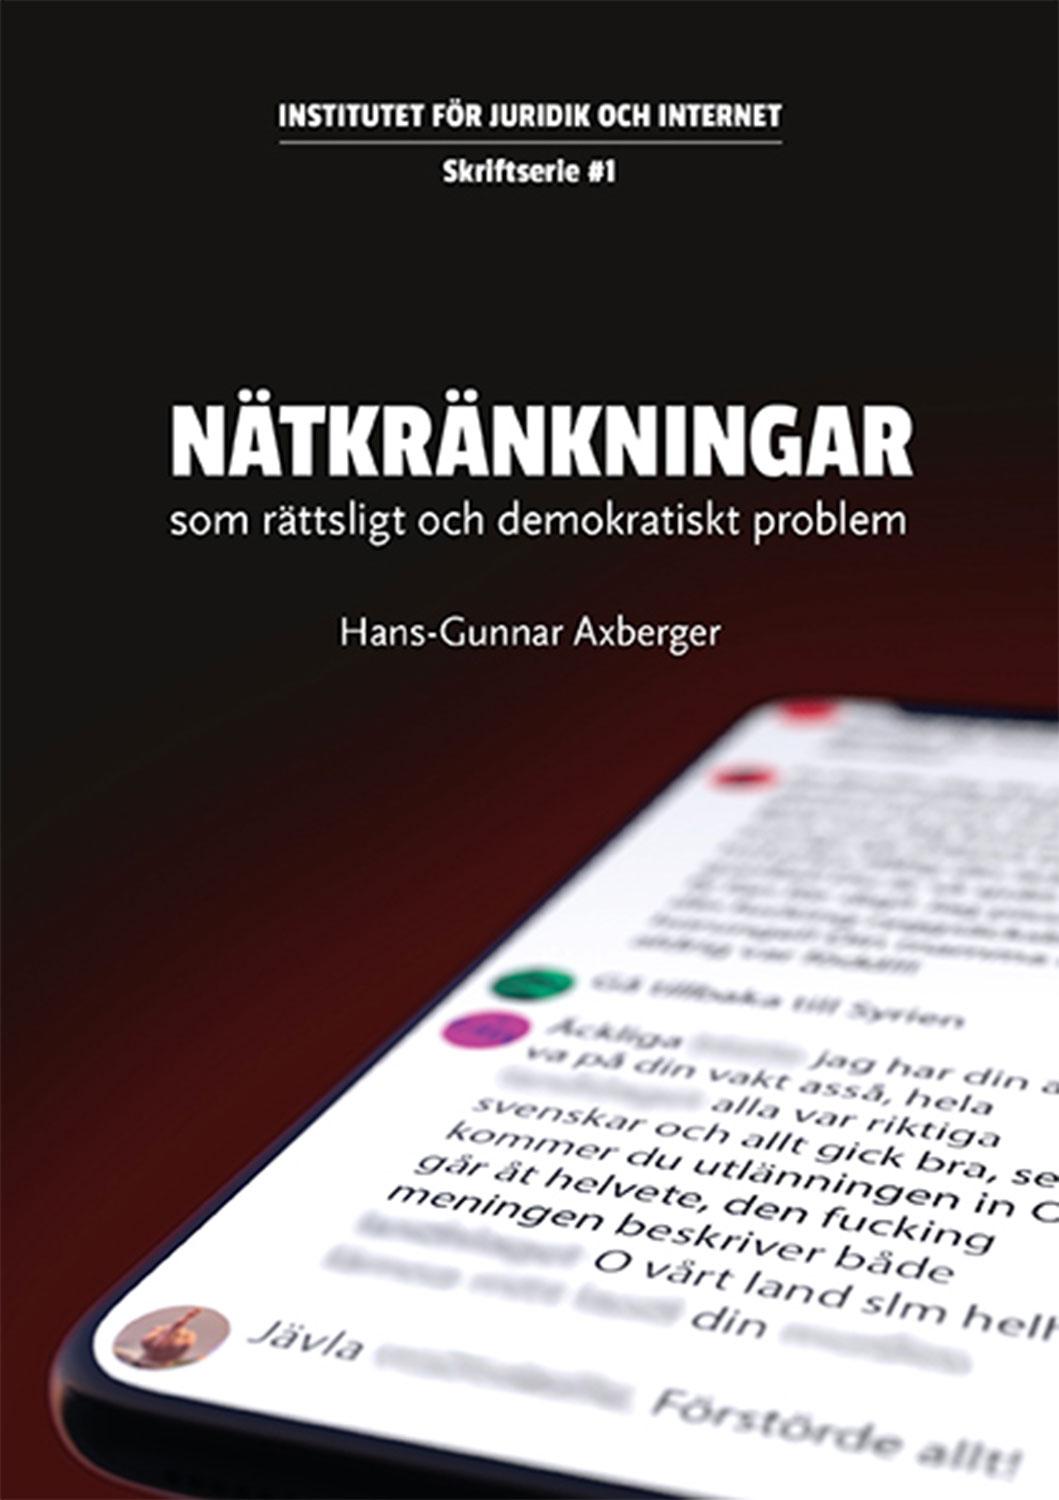 Hans-Gunnar Axbergers rapport borde vara obligatorisk läsning, skriver Robert Aschberg.